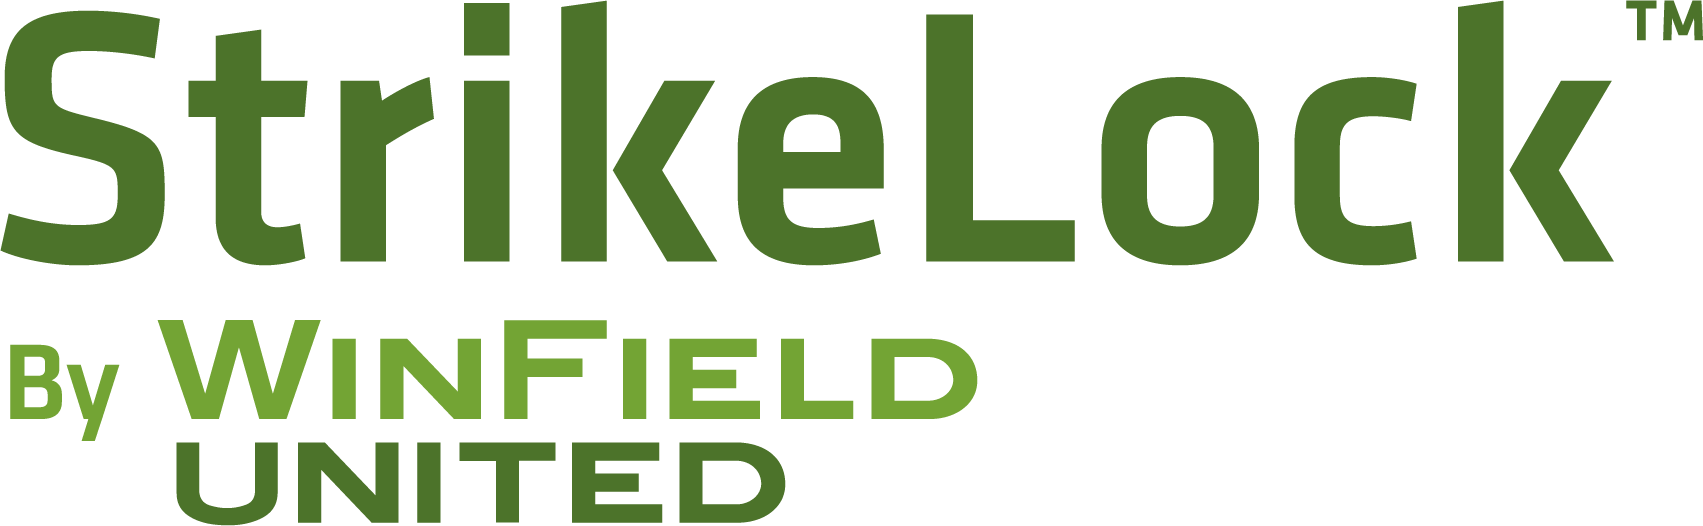 strikelock logo